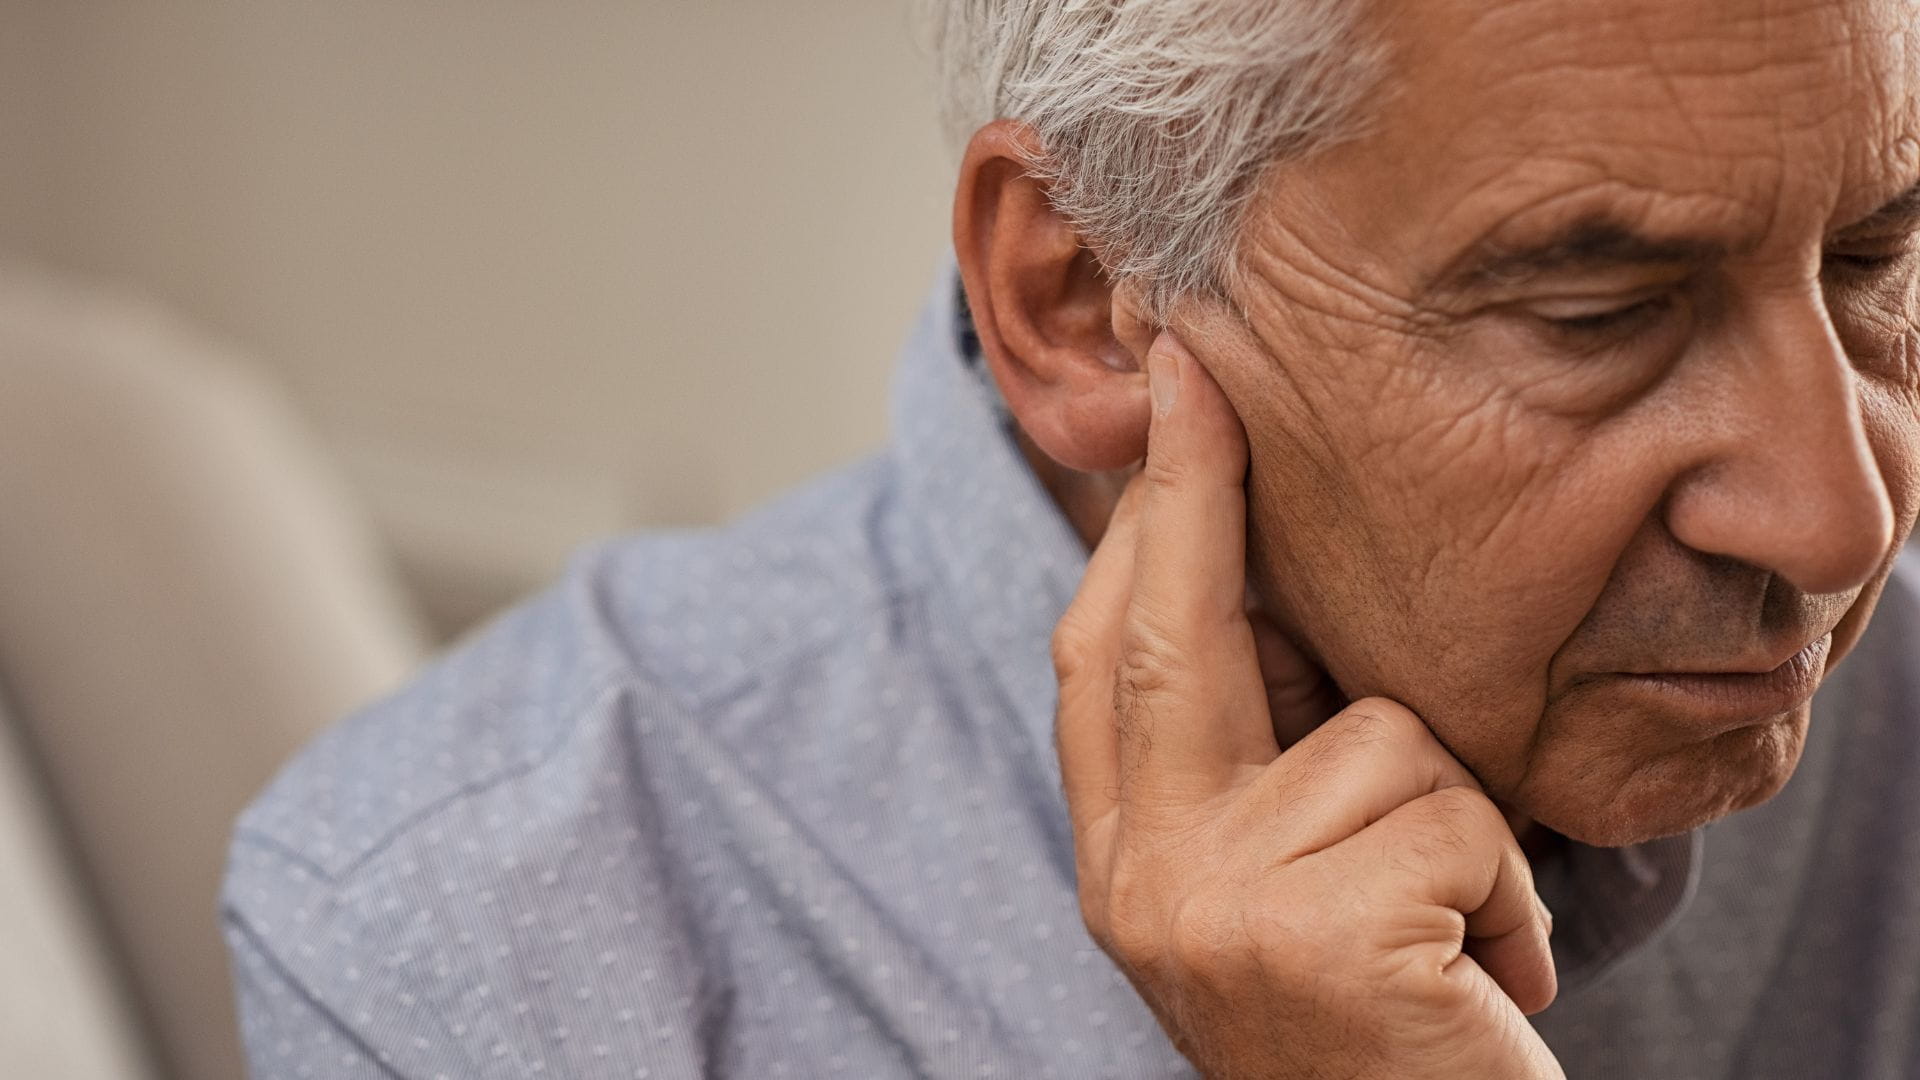 Szumy uszne mogą oznaczać poważne problemy zdrowotne